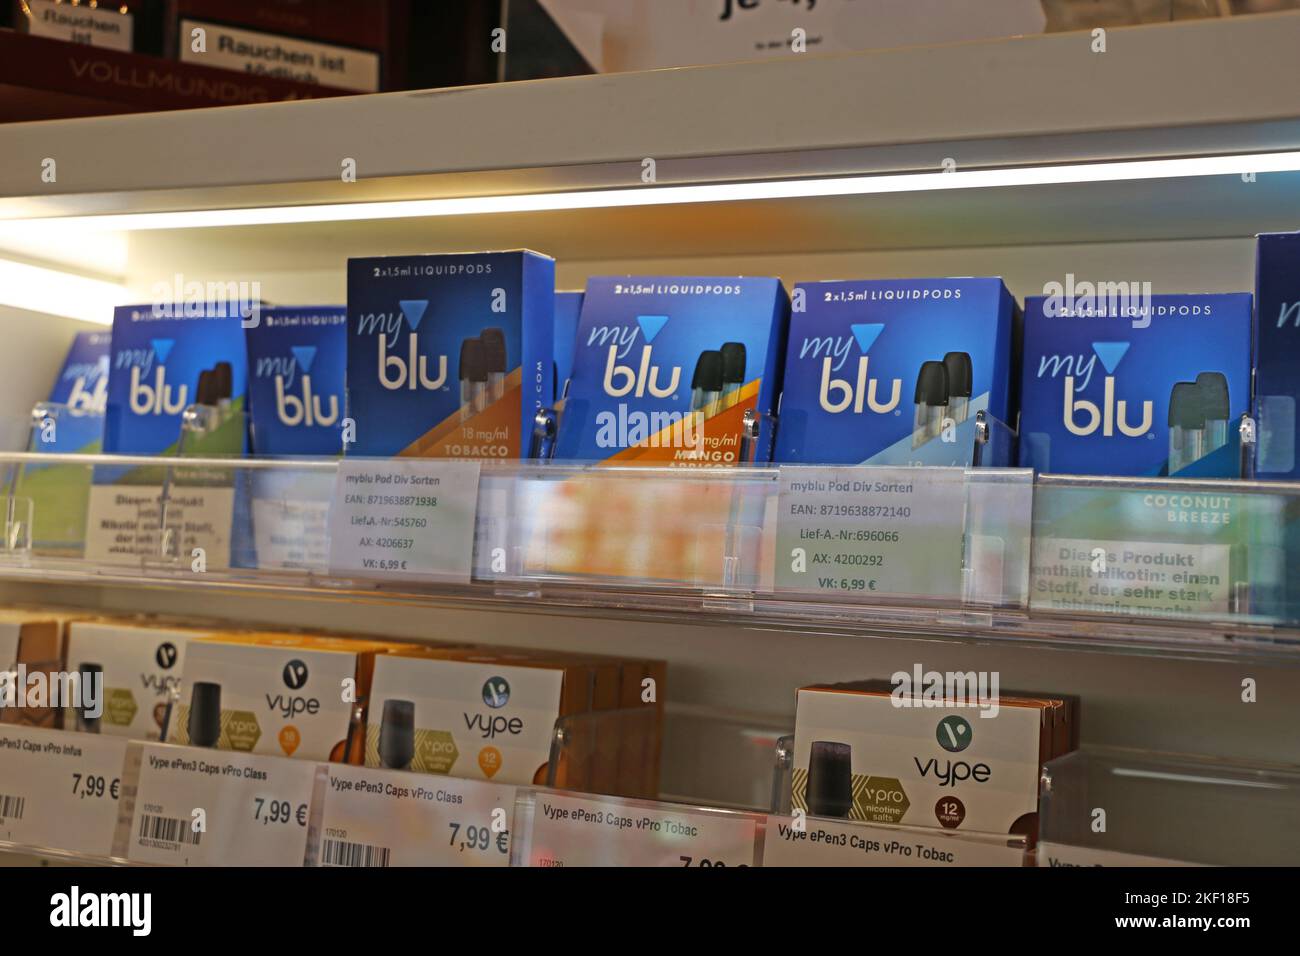 E-Cigarettes or Liquids in a shop Stock Photo